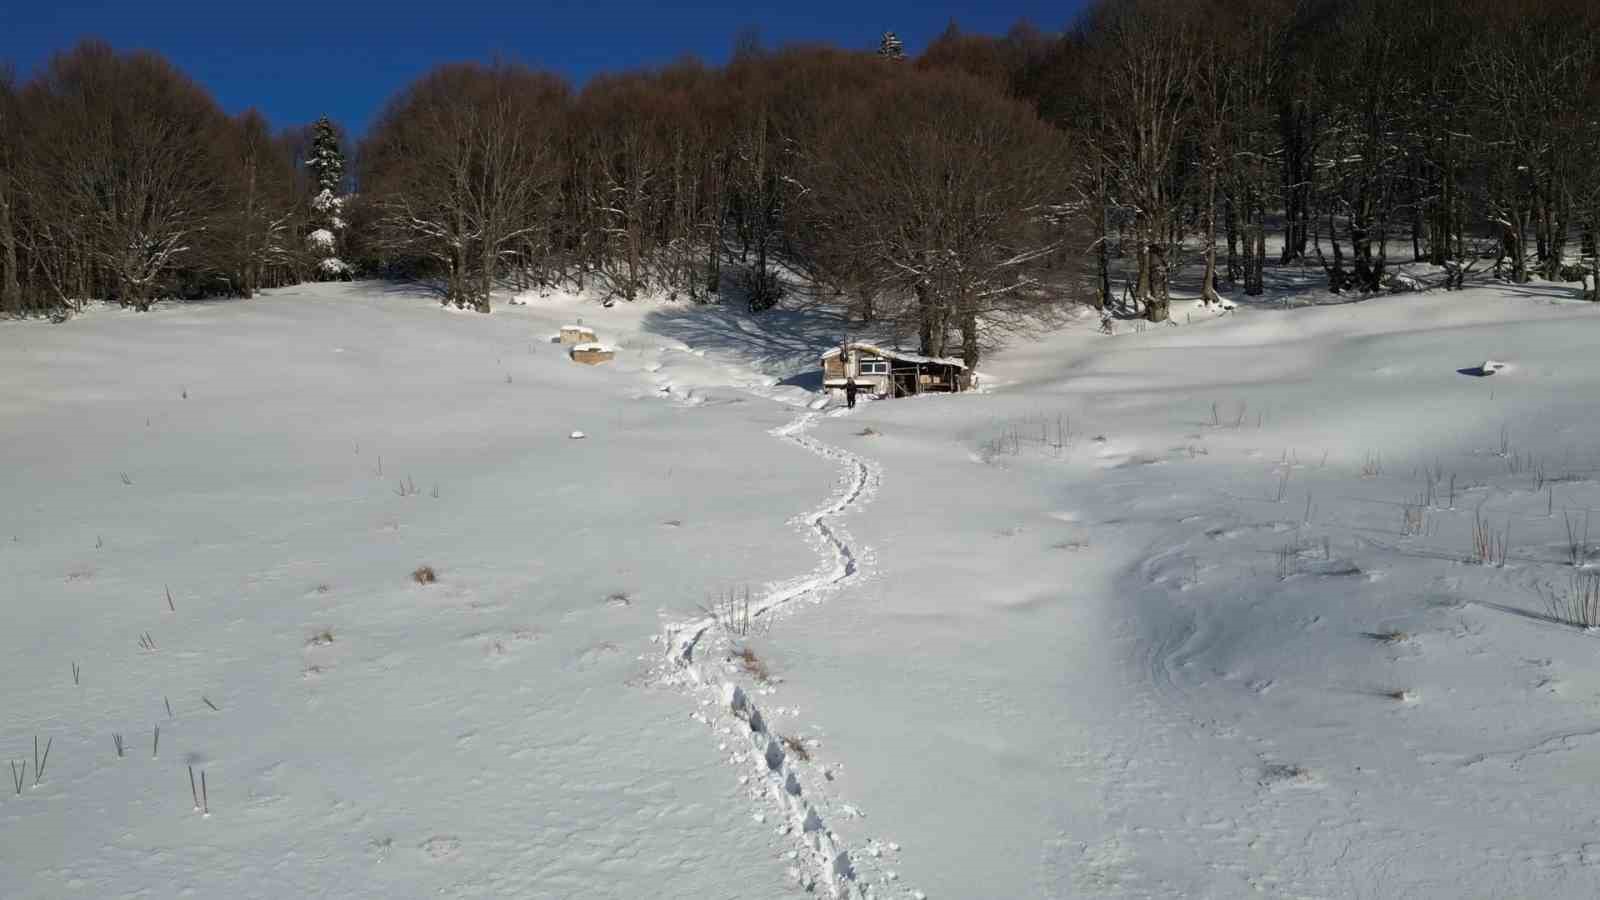 (Özel) Uludağ’ın ayak basılmayan karla kaplı yayları böyle görüntülendi